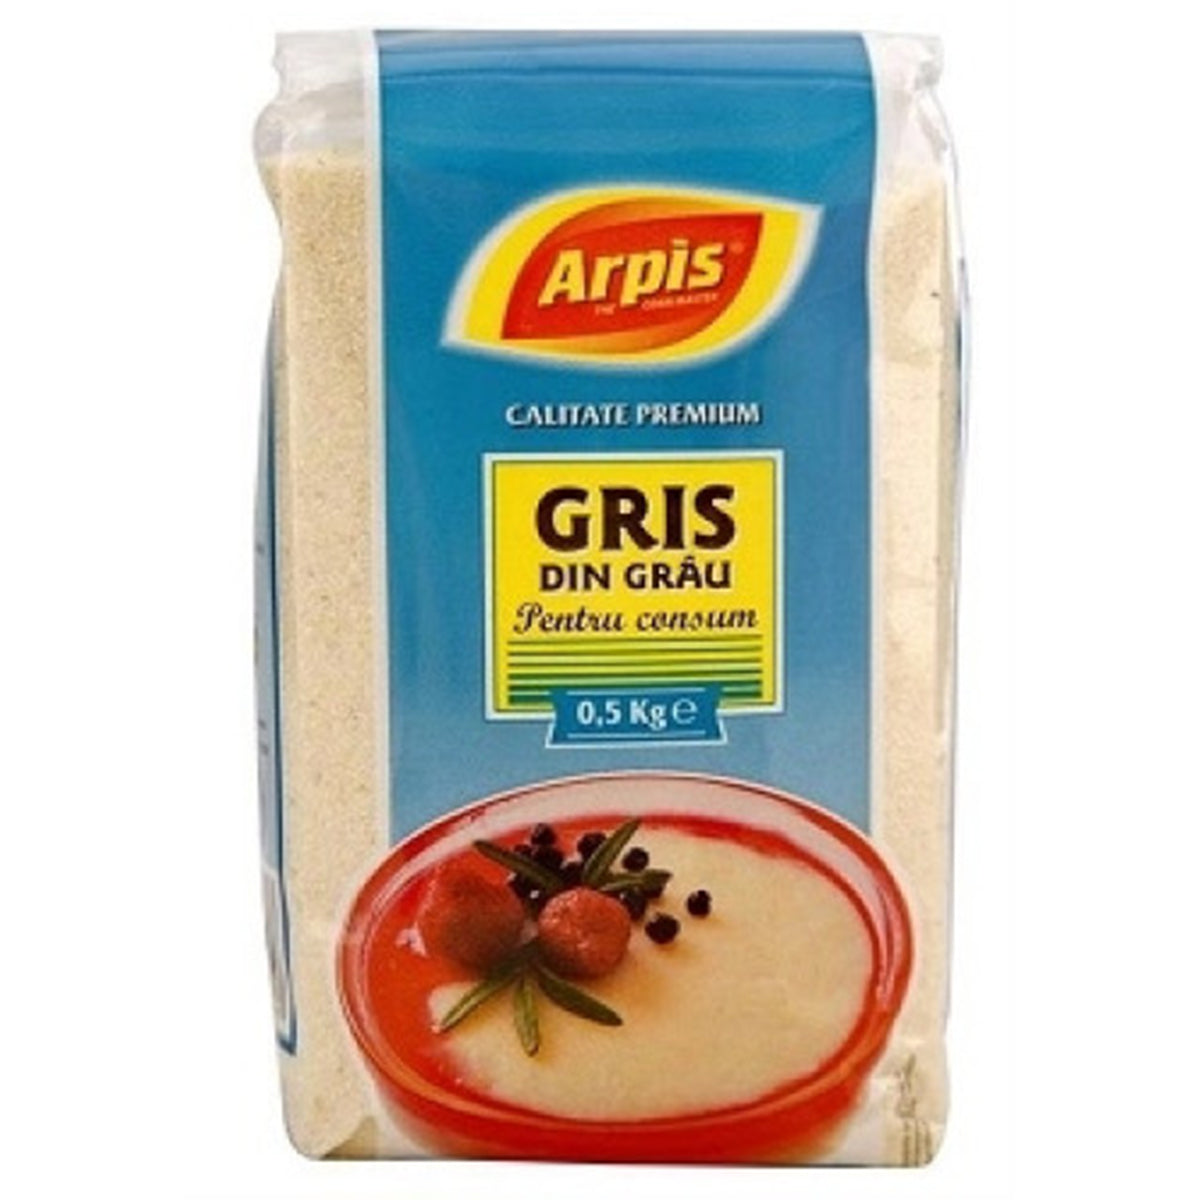 Arpis Gris Din Grau (Semolina) - 0.5kg - Continental Food Store